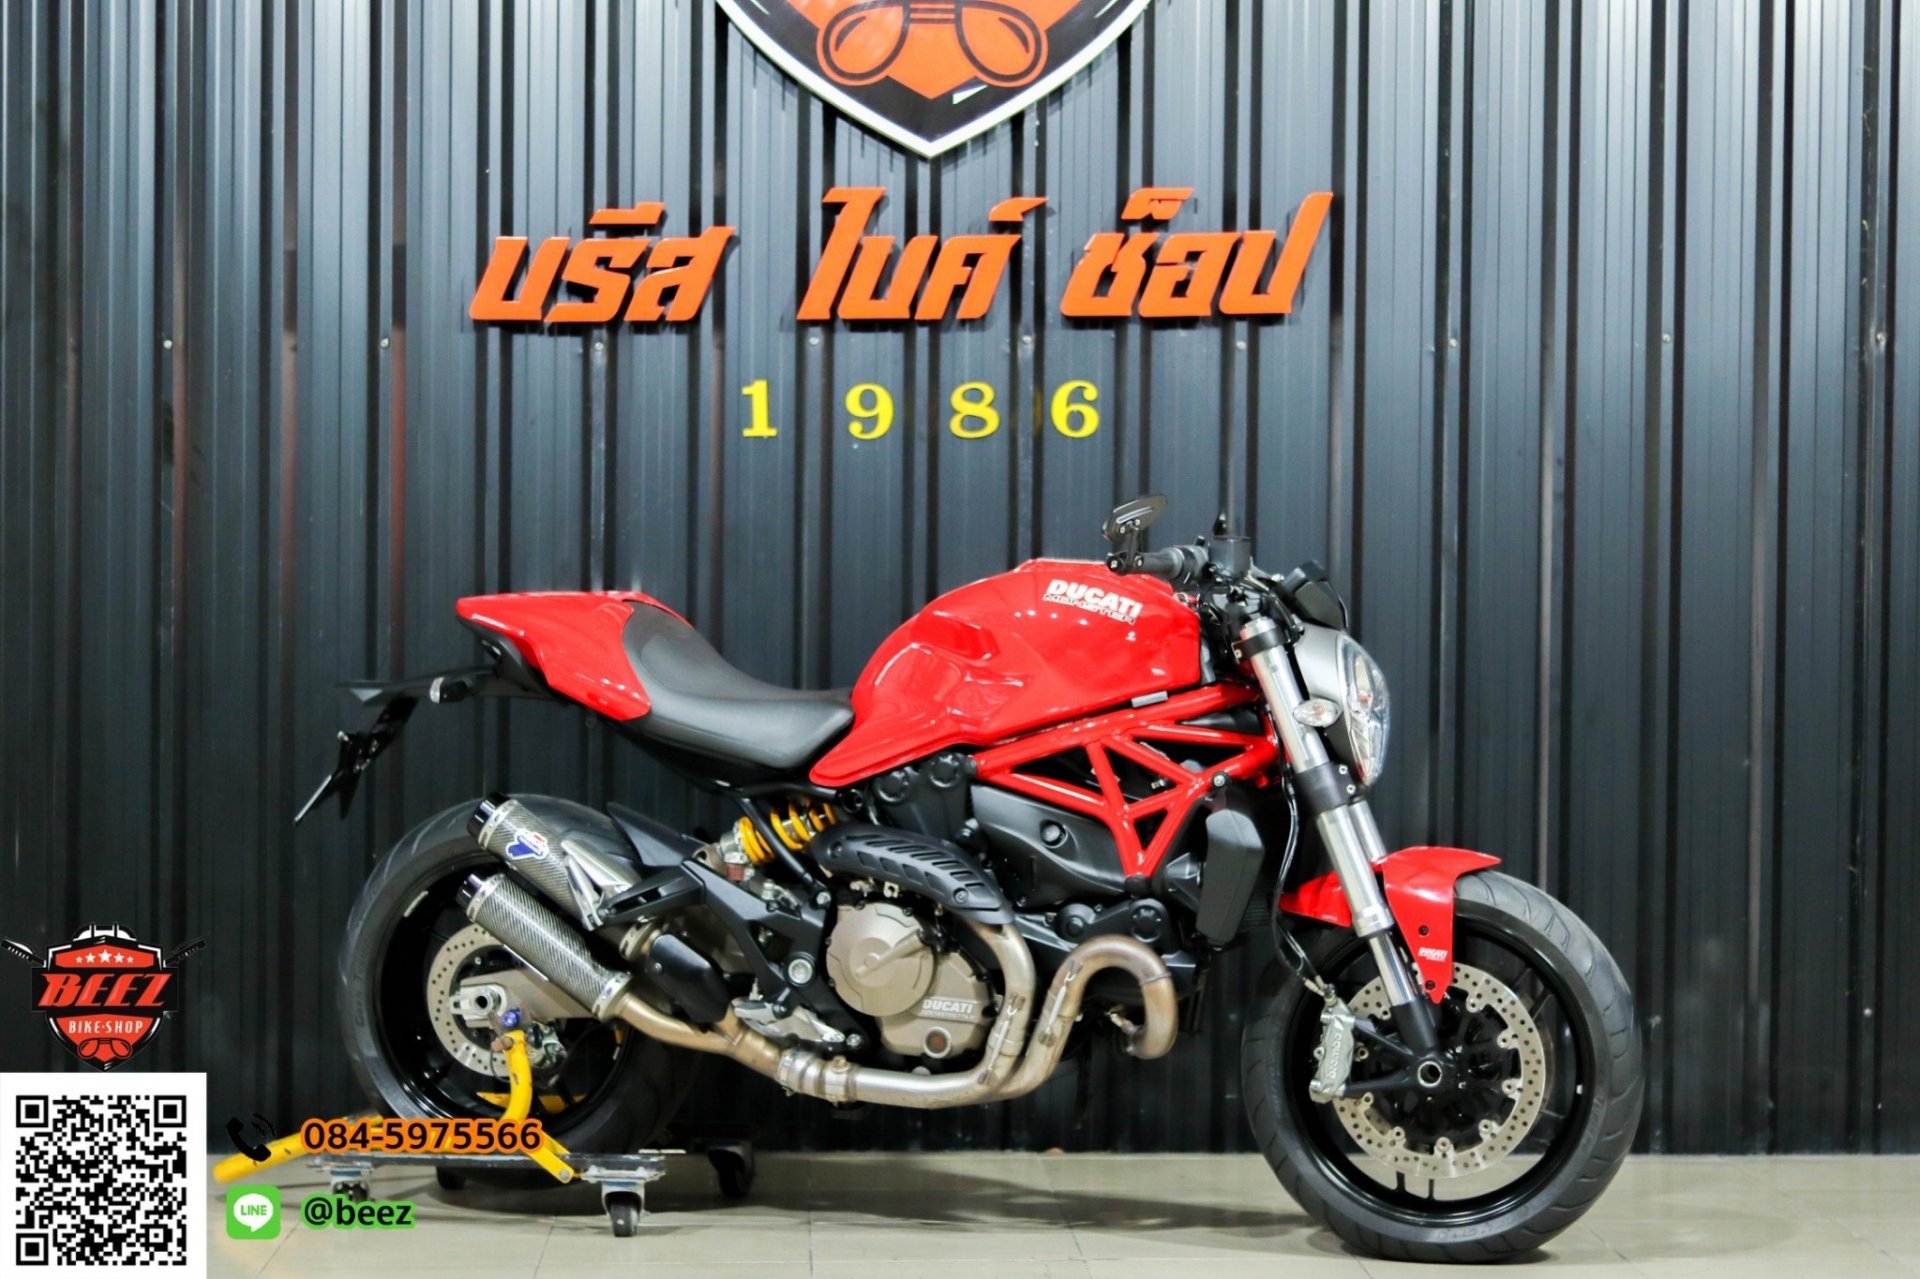 ขาย Ducati monster 821 ABS Performance ปี 2015 สภาพป้ายแดง สวยจัดจ้าน